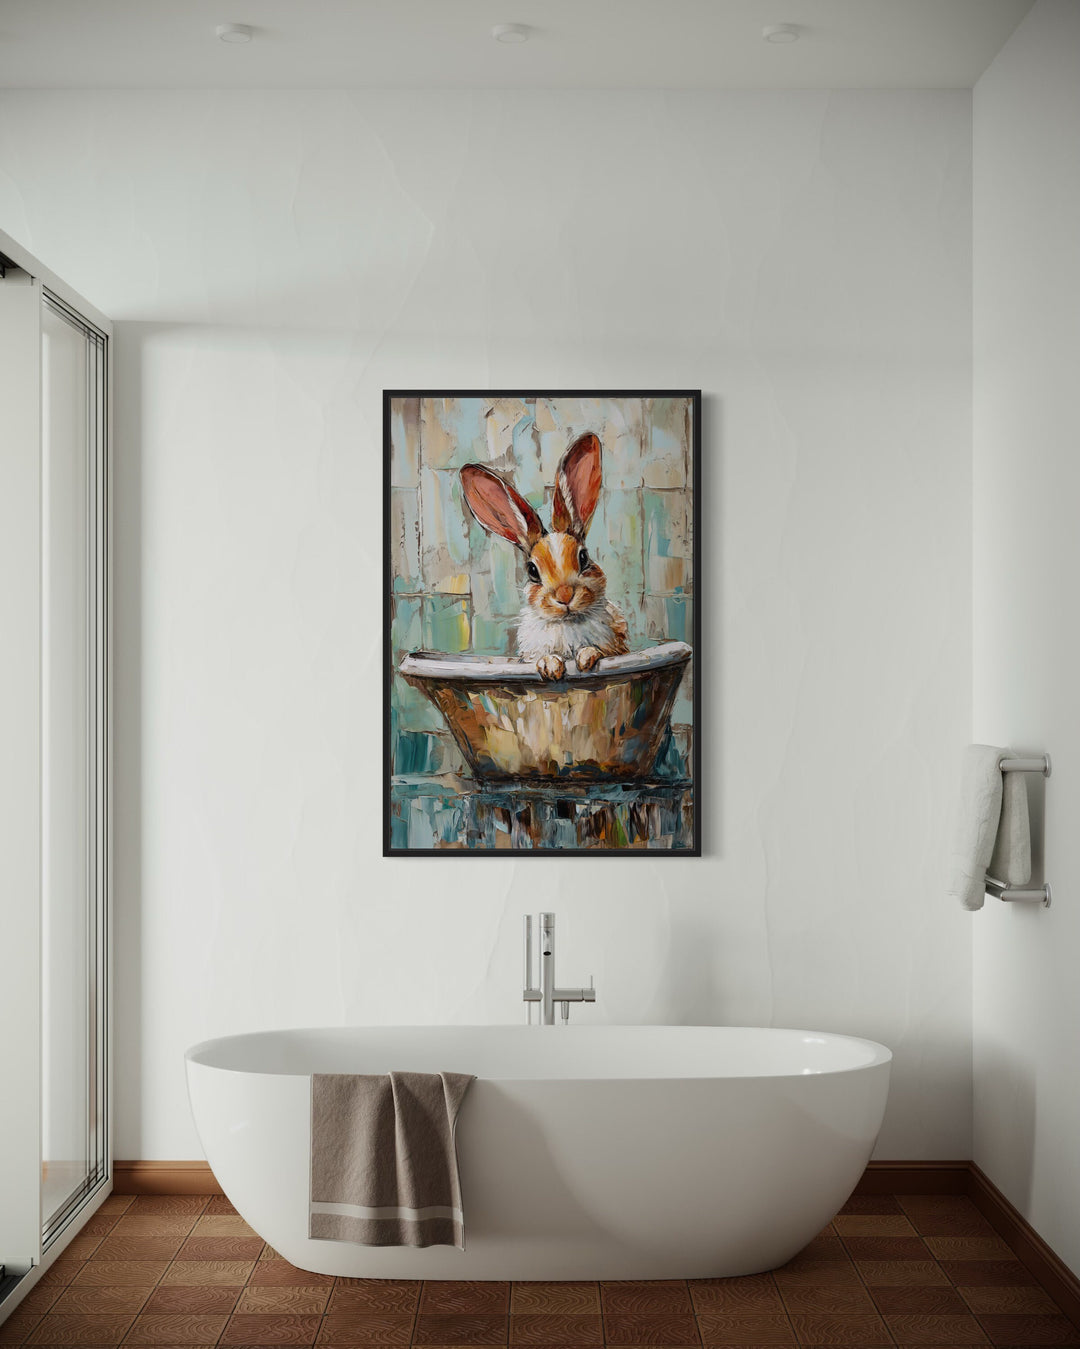 Cute Rabbit In The Bathtub Framed Canvas Wall Art in bathroom